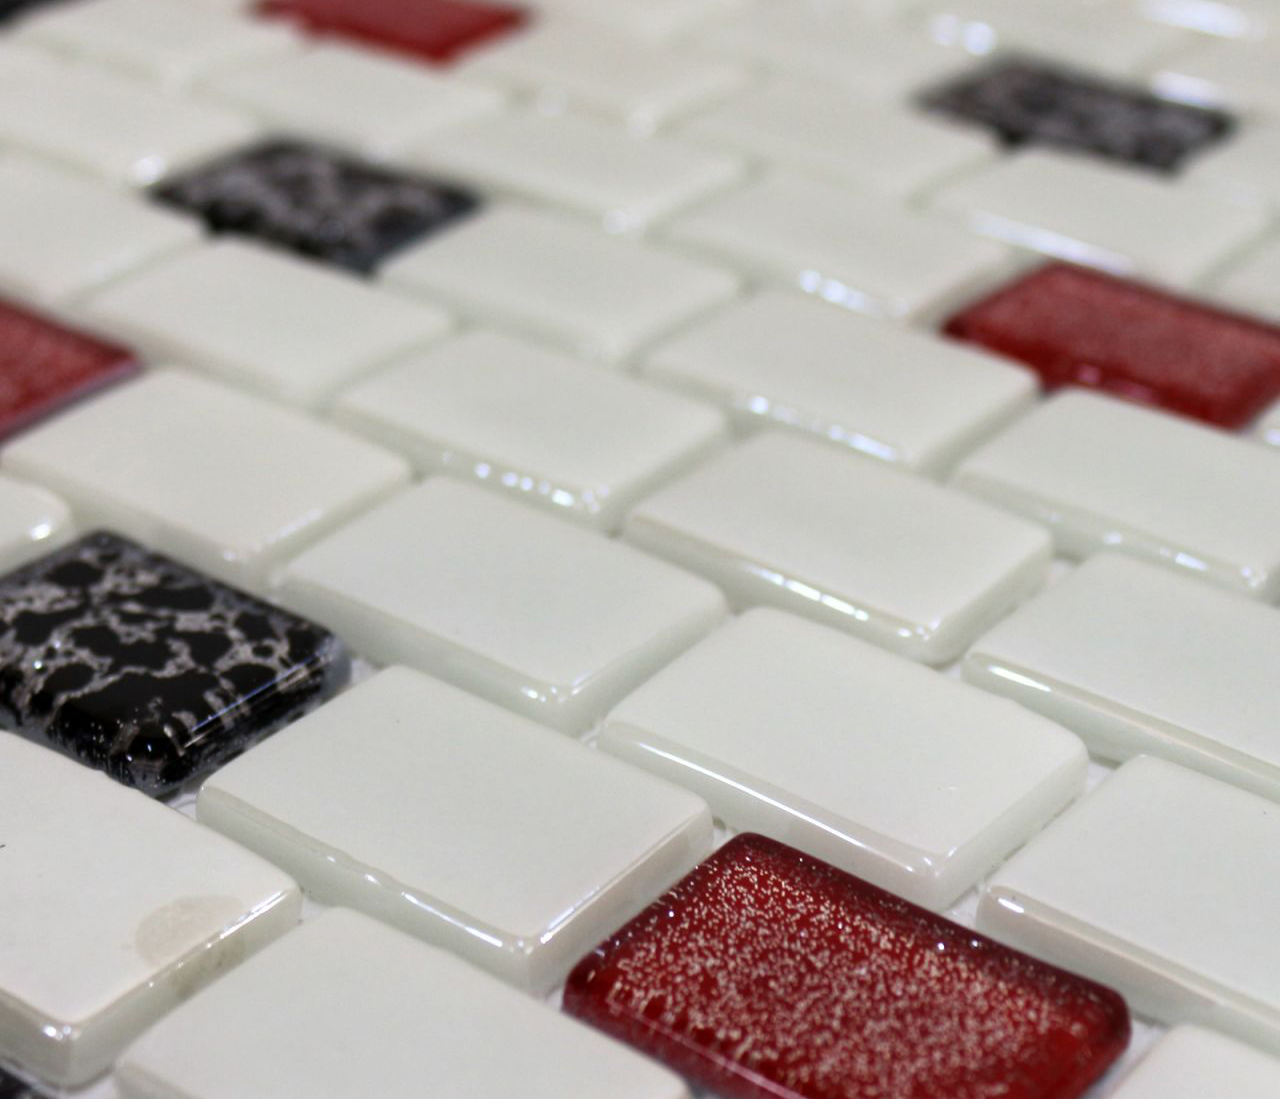 Cam Mozaik Klasik Siyah Beyaz Kırmızı 2,5x3,5 cm